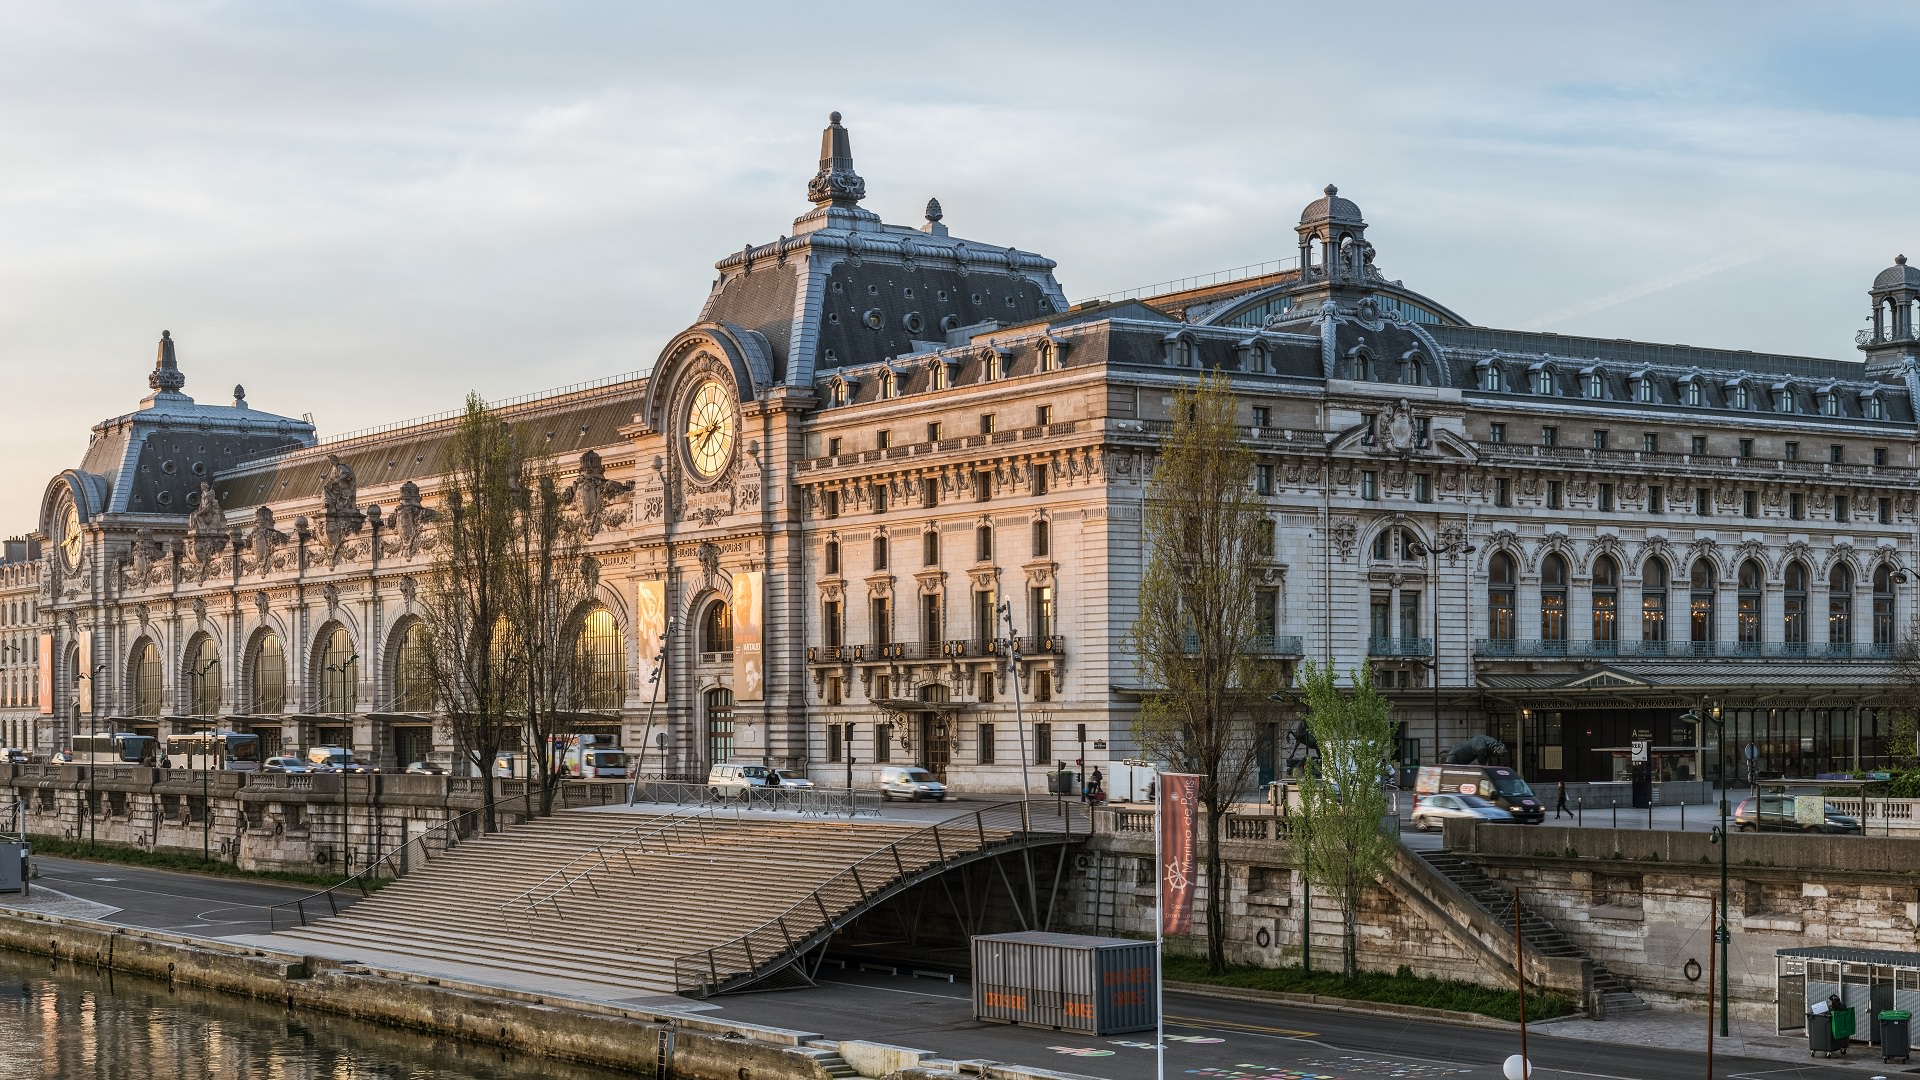 درباره موزه اورسی پاریس بیشتر بدانید | موزه اورسی + فیلم - ایوار